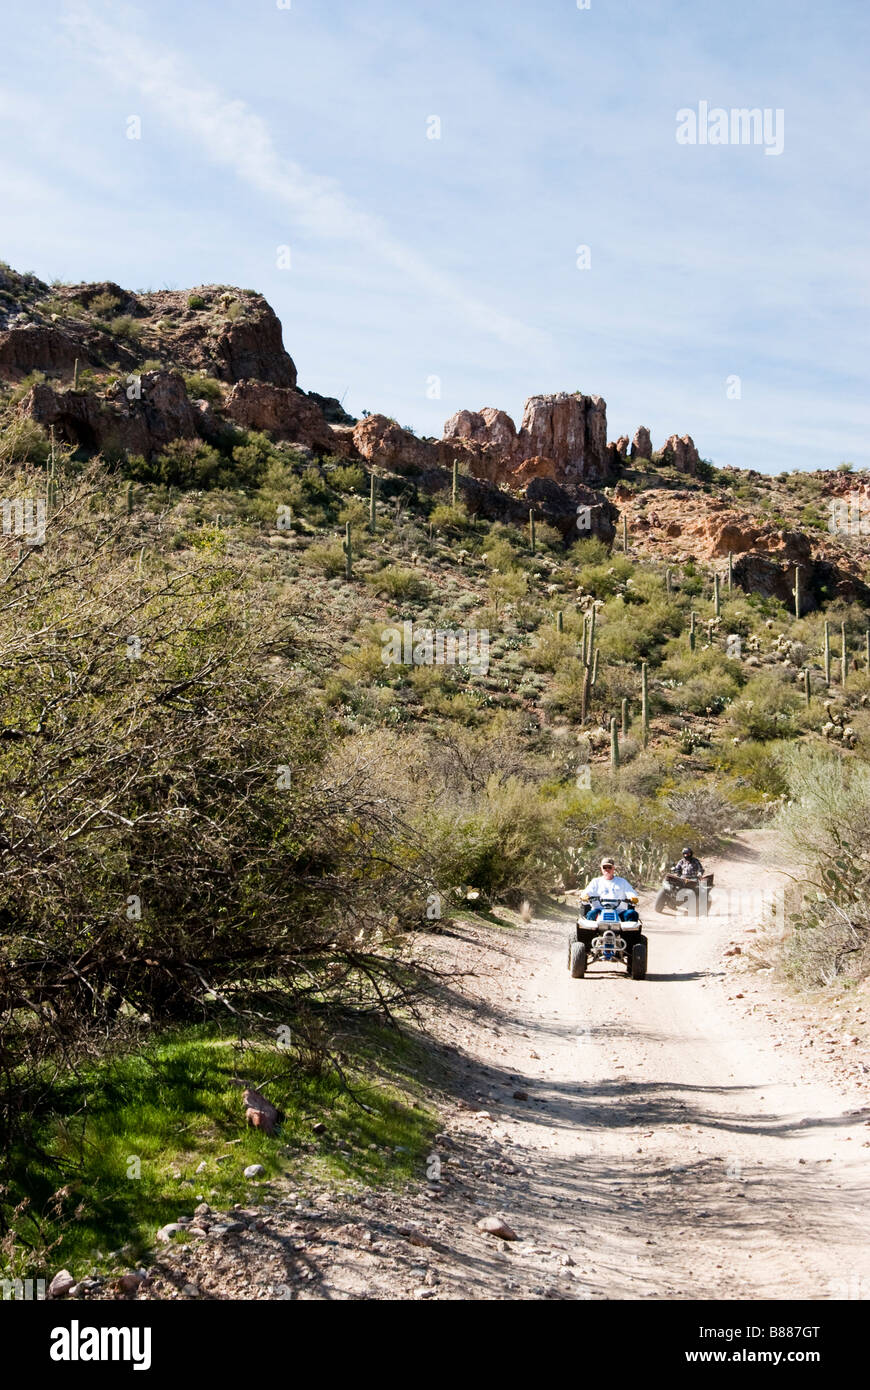 four wheeling on a desert trail Stock Photo